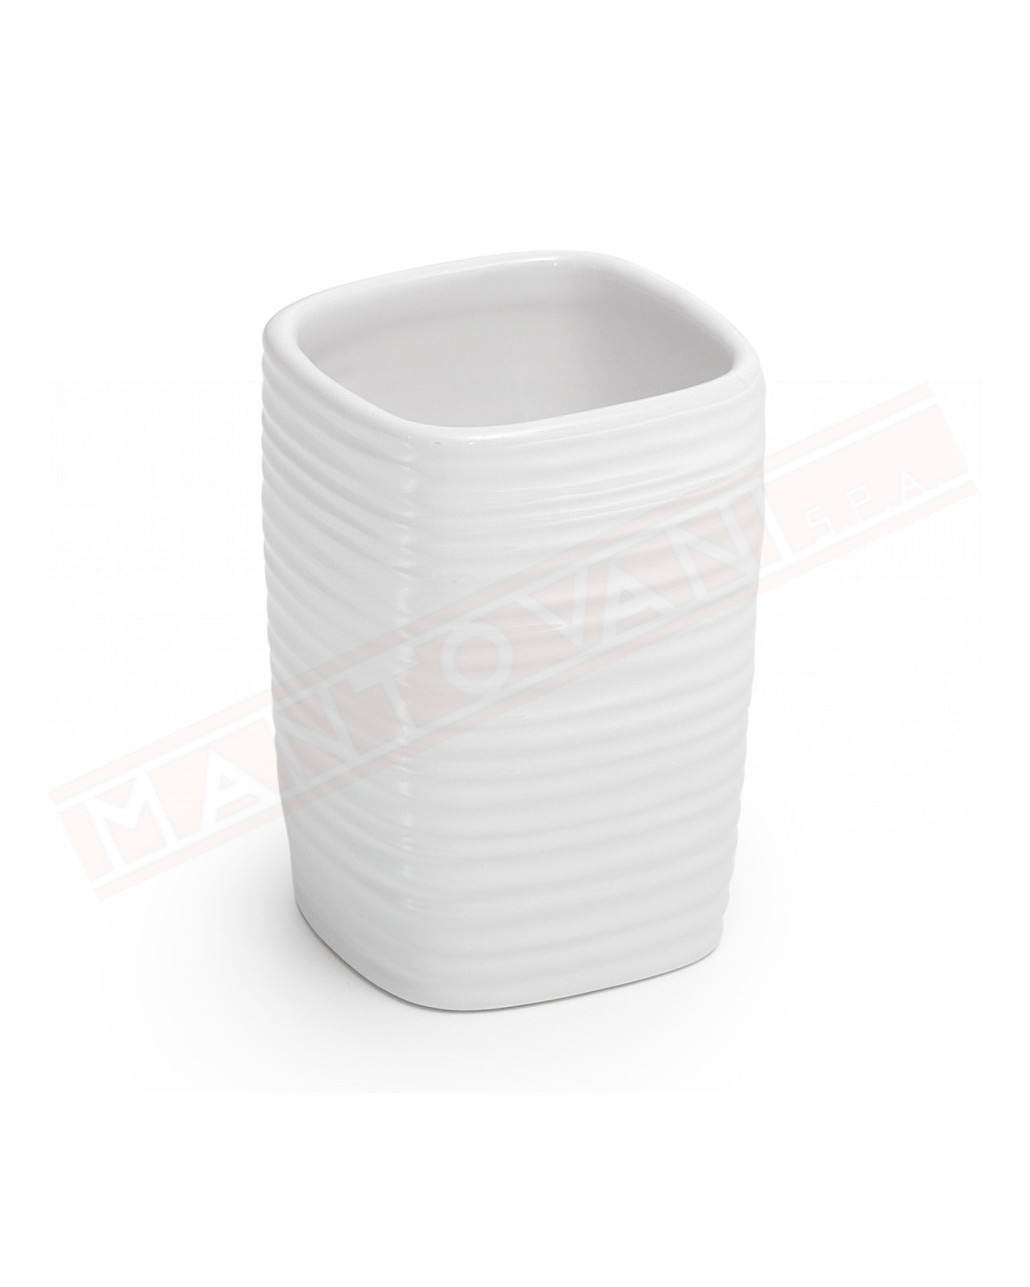 Gedy Kelly portaspazzolini in ceramica bianco misure art 7,2x7,2x10